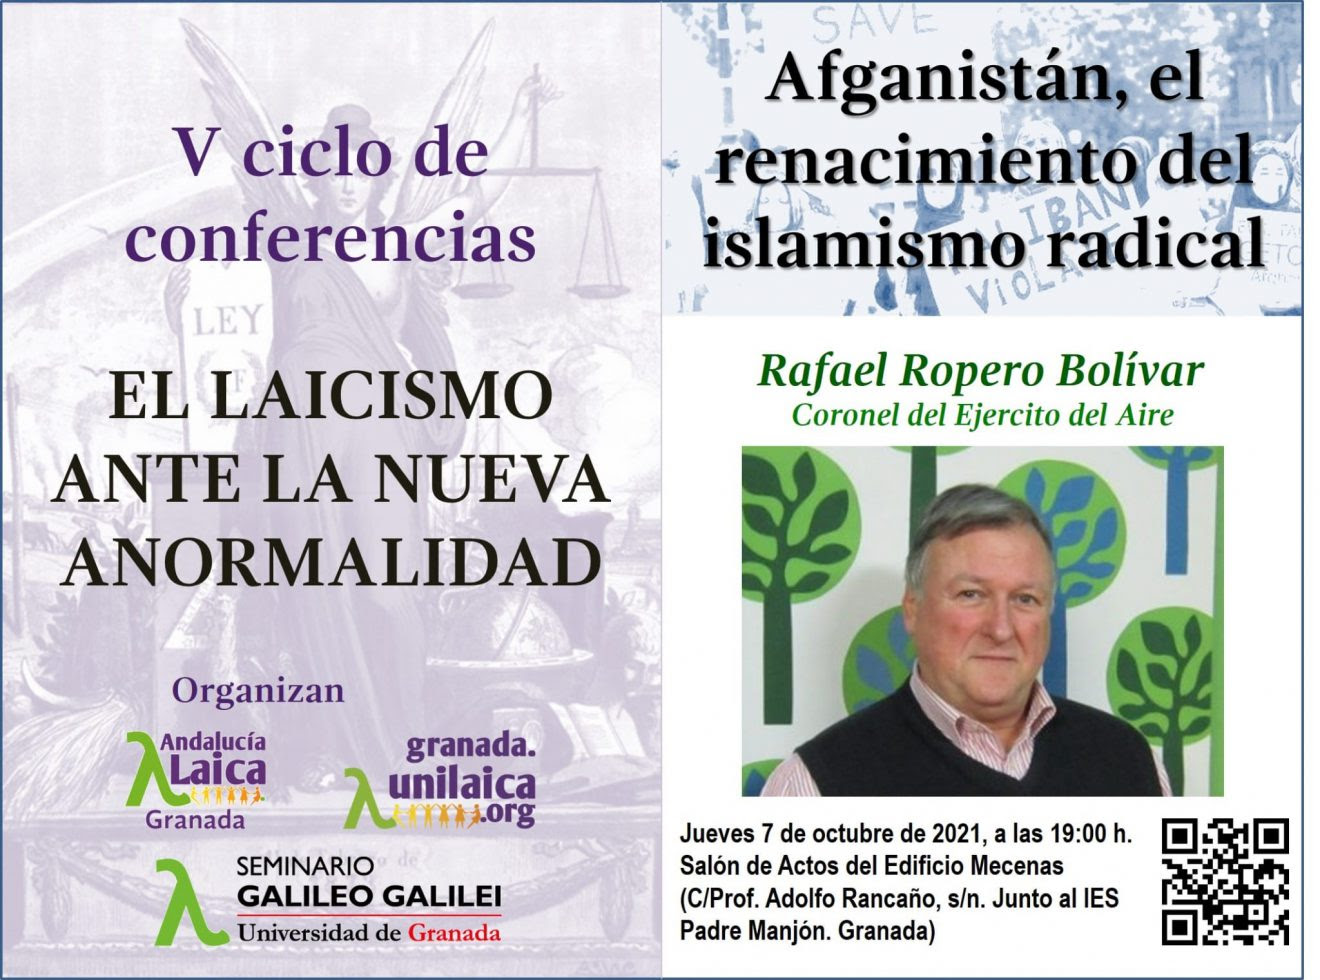 Agrupaciones laicistas de Granada ofrecerán este jueves un stream de la conferencia ‘Afganistán, el renacimiento del islamismo radical', a cargo de Rafael Ropero Bolívar